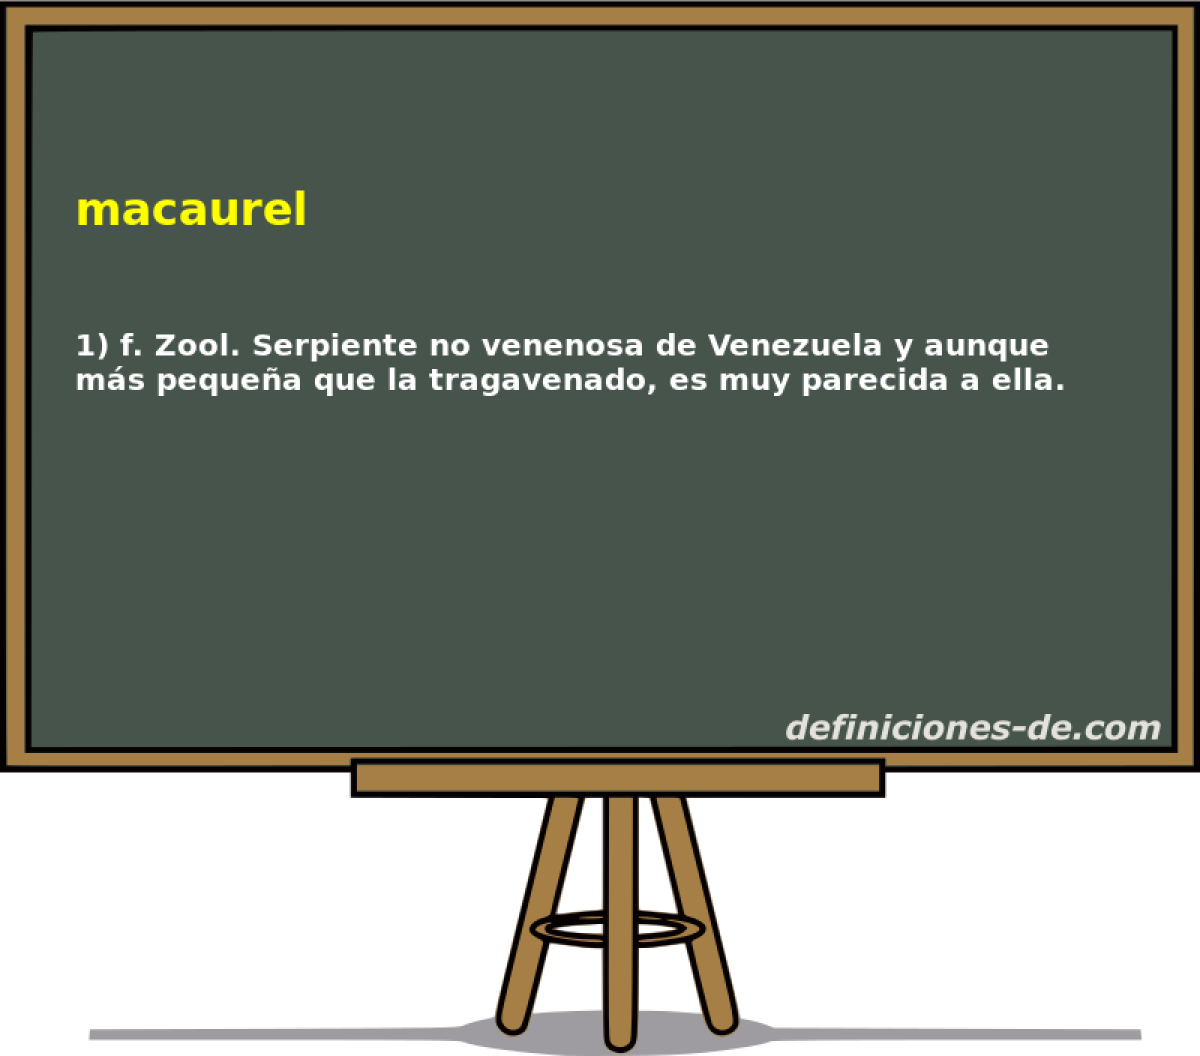 macaurel 